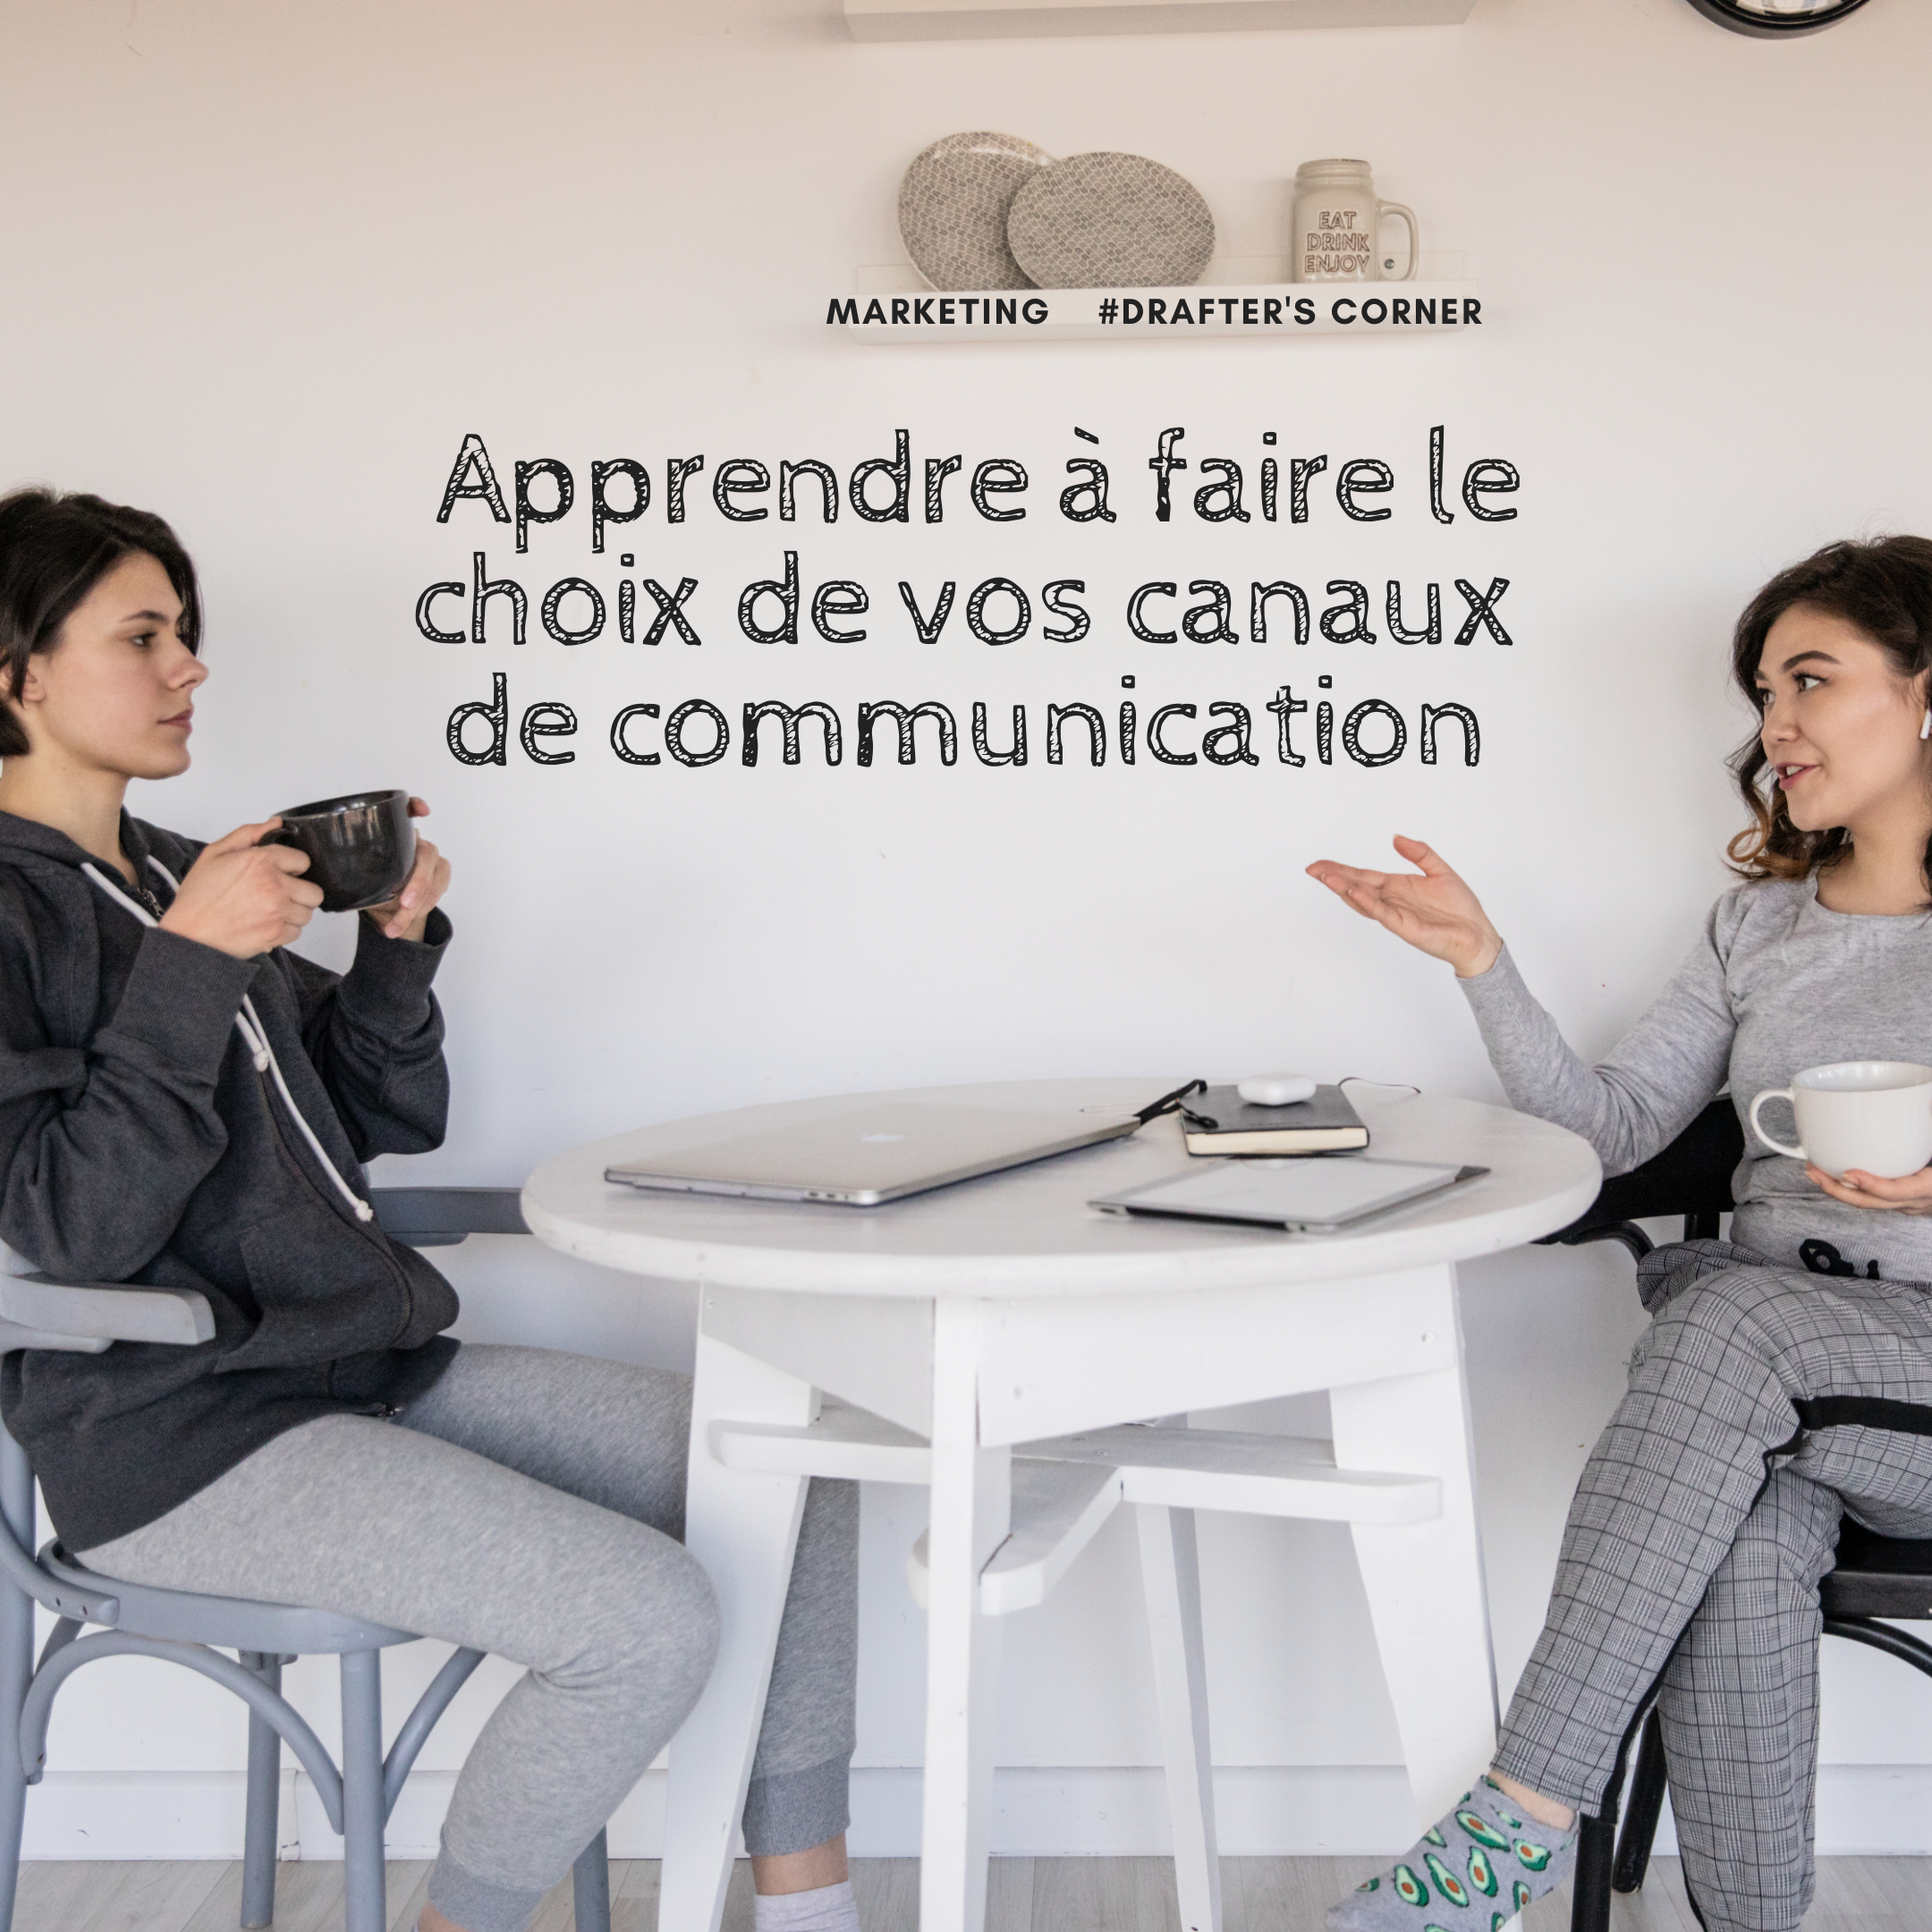 MARKETING: APPRENDRE À FAIRE LE CHOIX DE VOS CANAUX DE COMMUNICATION